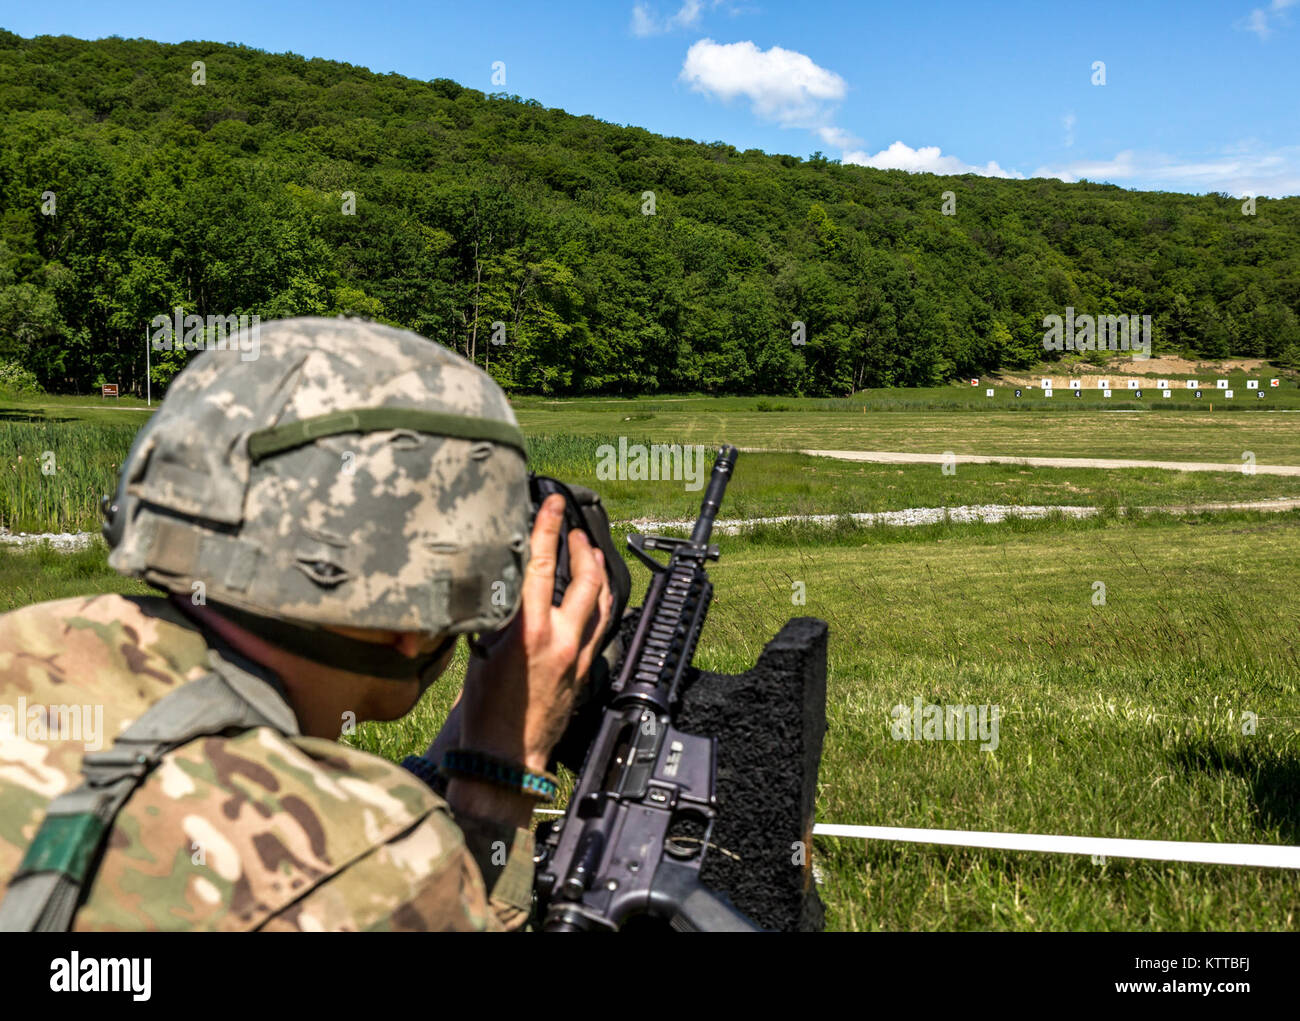 Le sergent de l'armée américaine. Ian Ault, avec Delta Company, 2e Bataillon, 108e Régiment d'infanterie, la Garde Nationale de New York, vérifie sa cible pendant le Sgt Henry Johnson Combat Rifle Match individuel dans le cadre de la 38e conférence annuelle "TAG (l'adjudant général) Match" Combattre l'exercice Soutien La formation au Camp Smith Site de formation, N.Y., le 3 juin 2017. Le TAG Match est un événement de 3 jours menée par la Garde Nationale de New York afin de promouvoir l'excellence en entraînement et offrent aux soldats, aviateurs et Milice d'État l'occasion de tester leurs compétences et systèmes d'armes dans une bataille, Banque D'Images